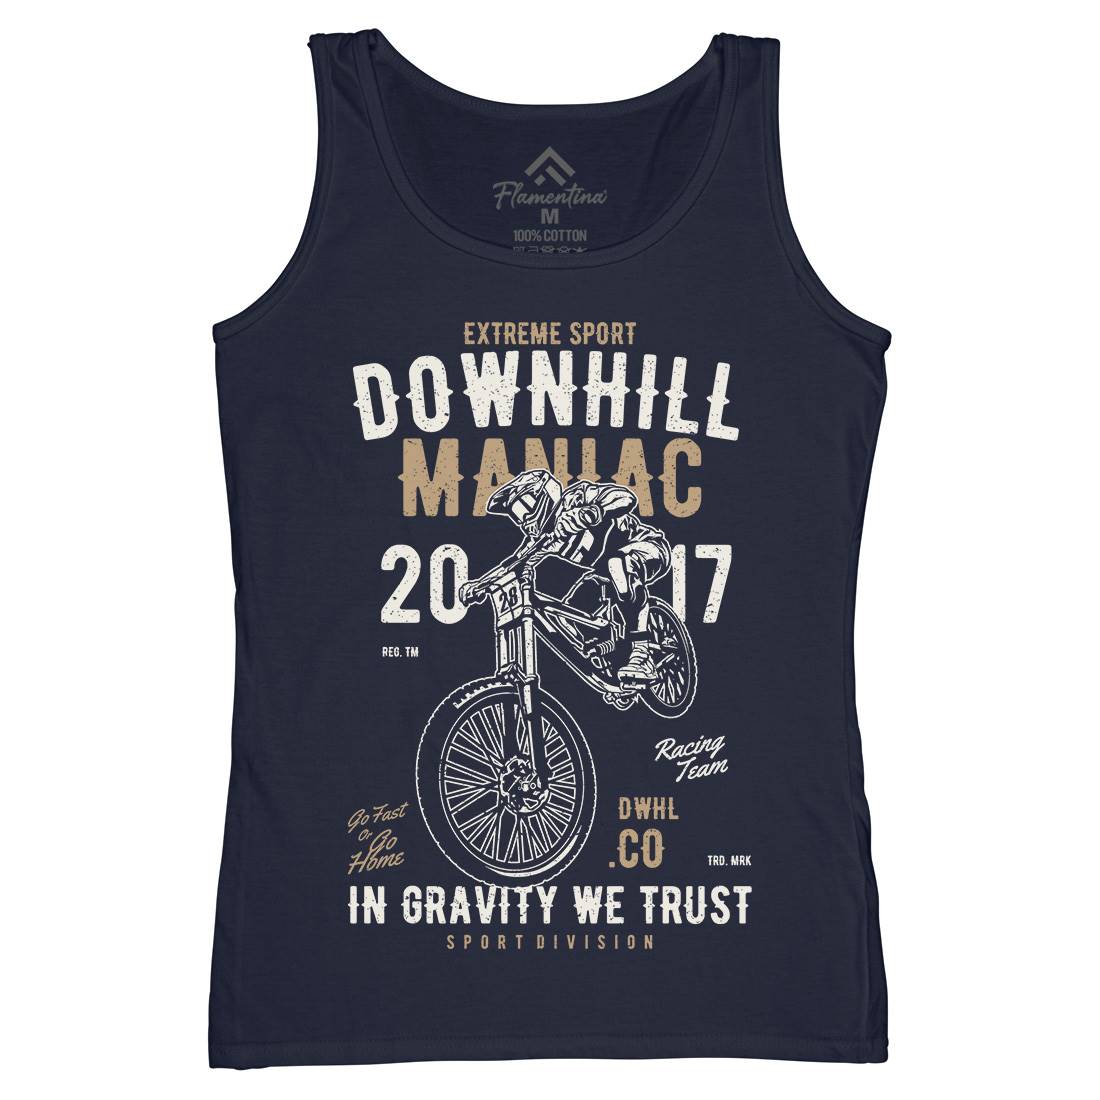 Downhill Maniac Womens Organic Tank Top Vest Bikes A644